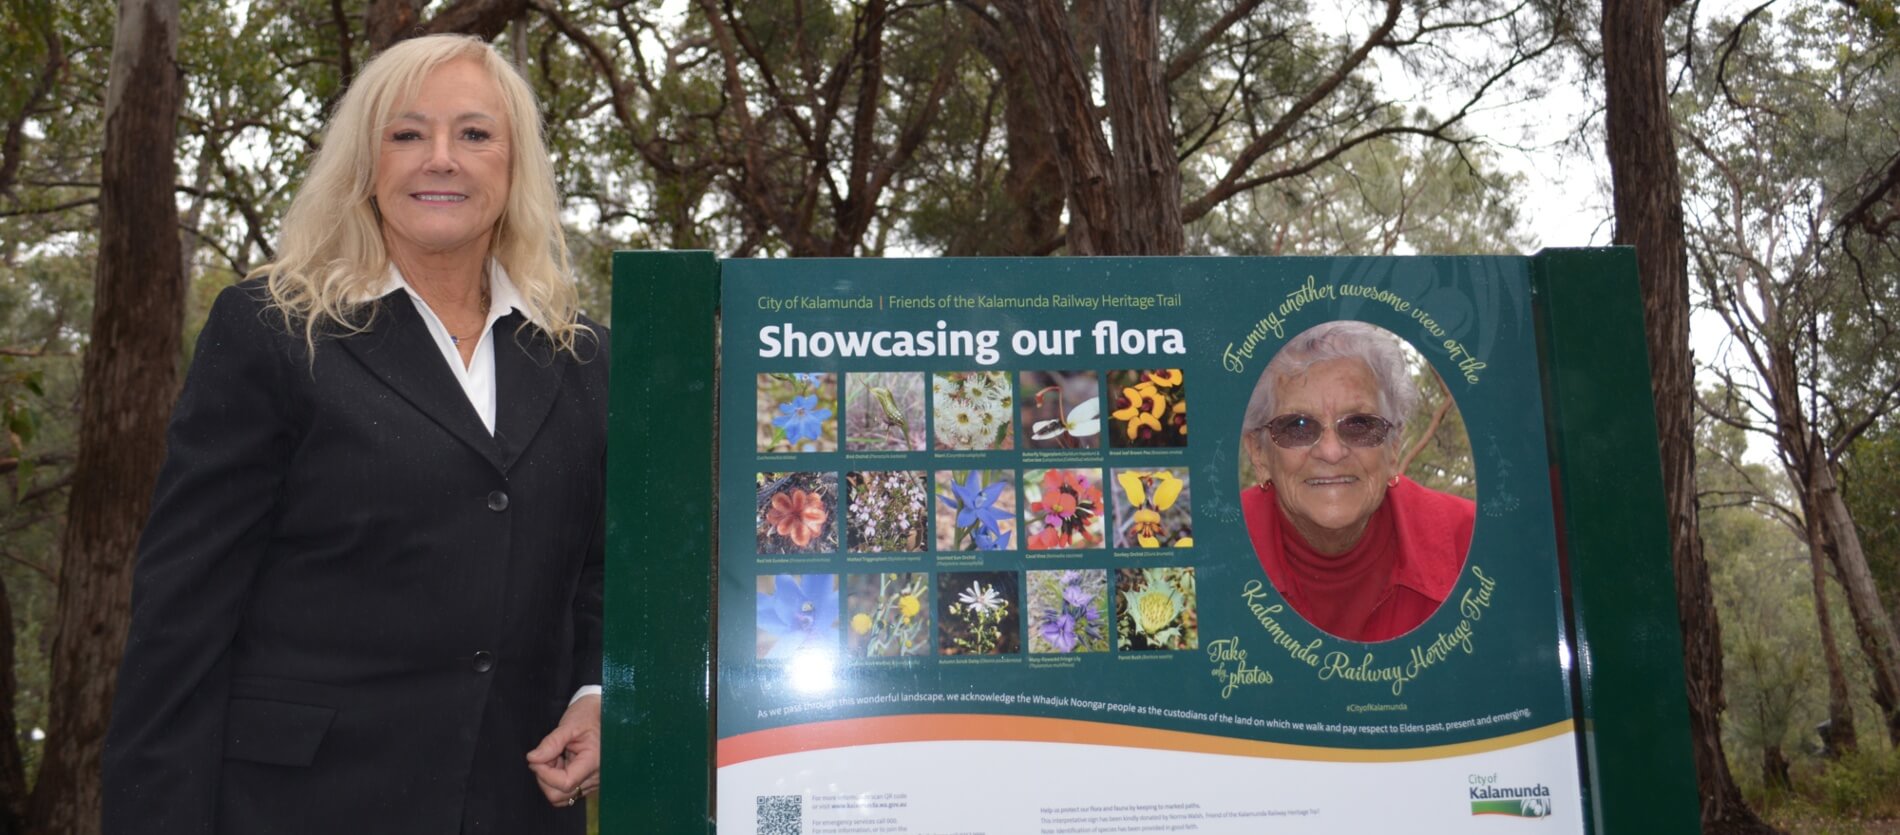 Mayor and Norma Walsh at the Kalamunda Heritage Trail Flora Board